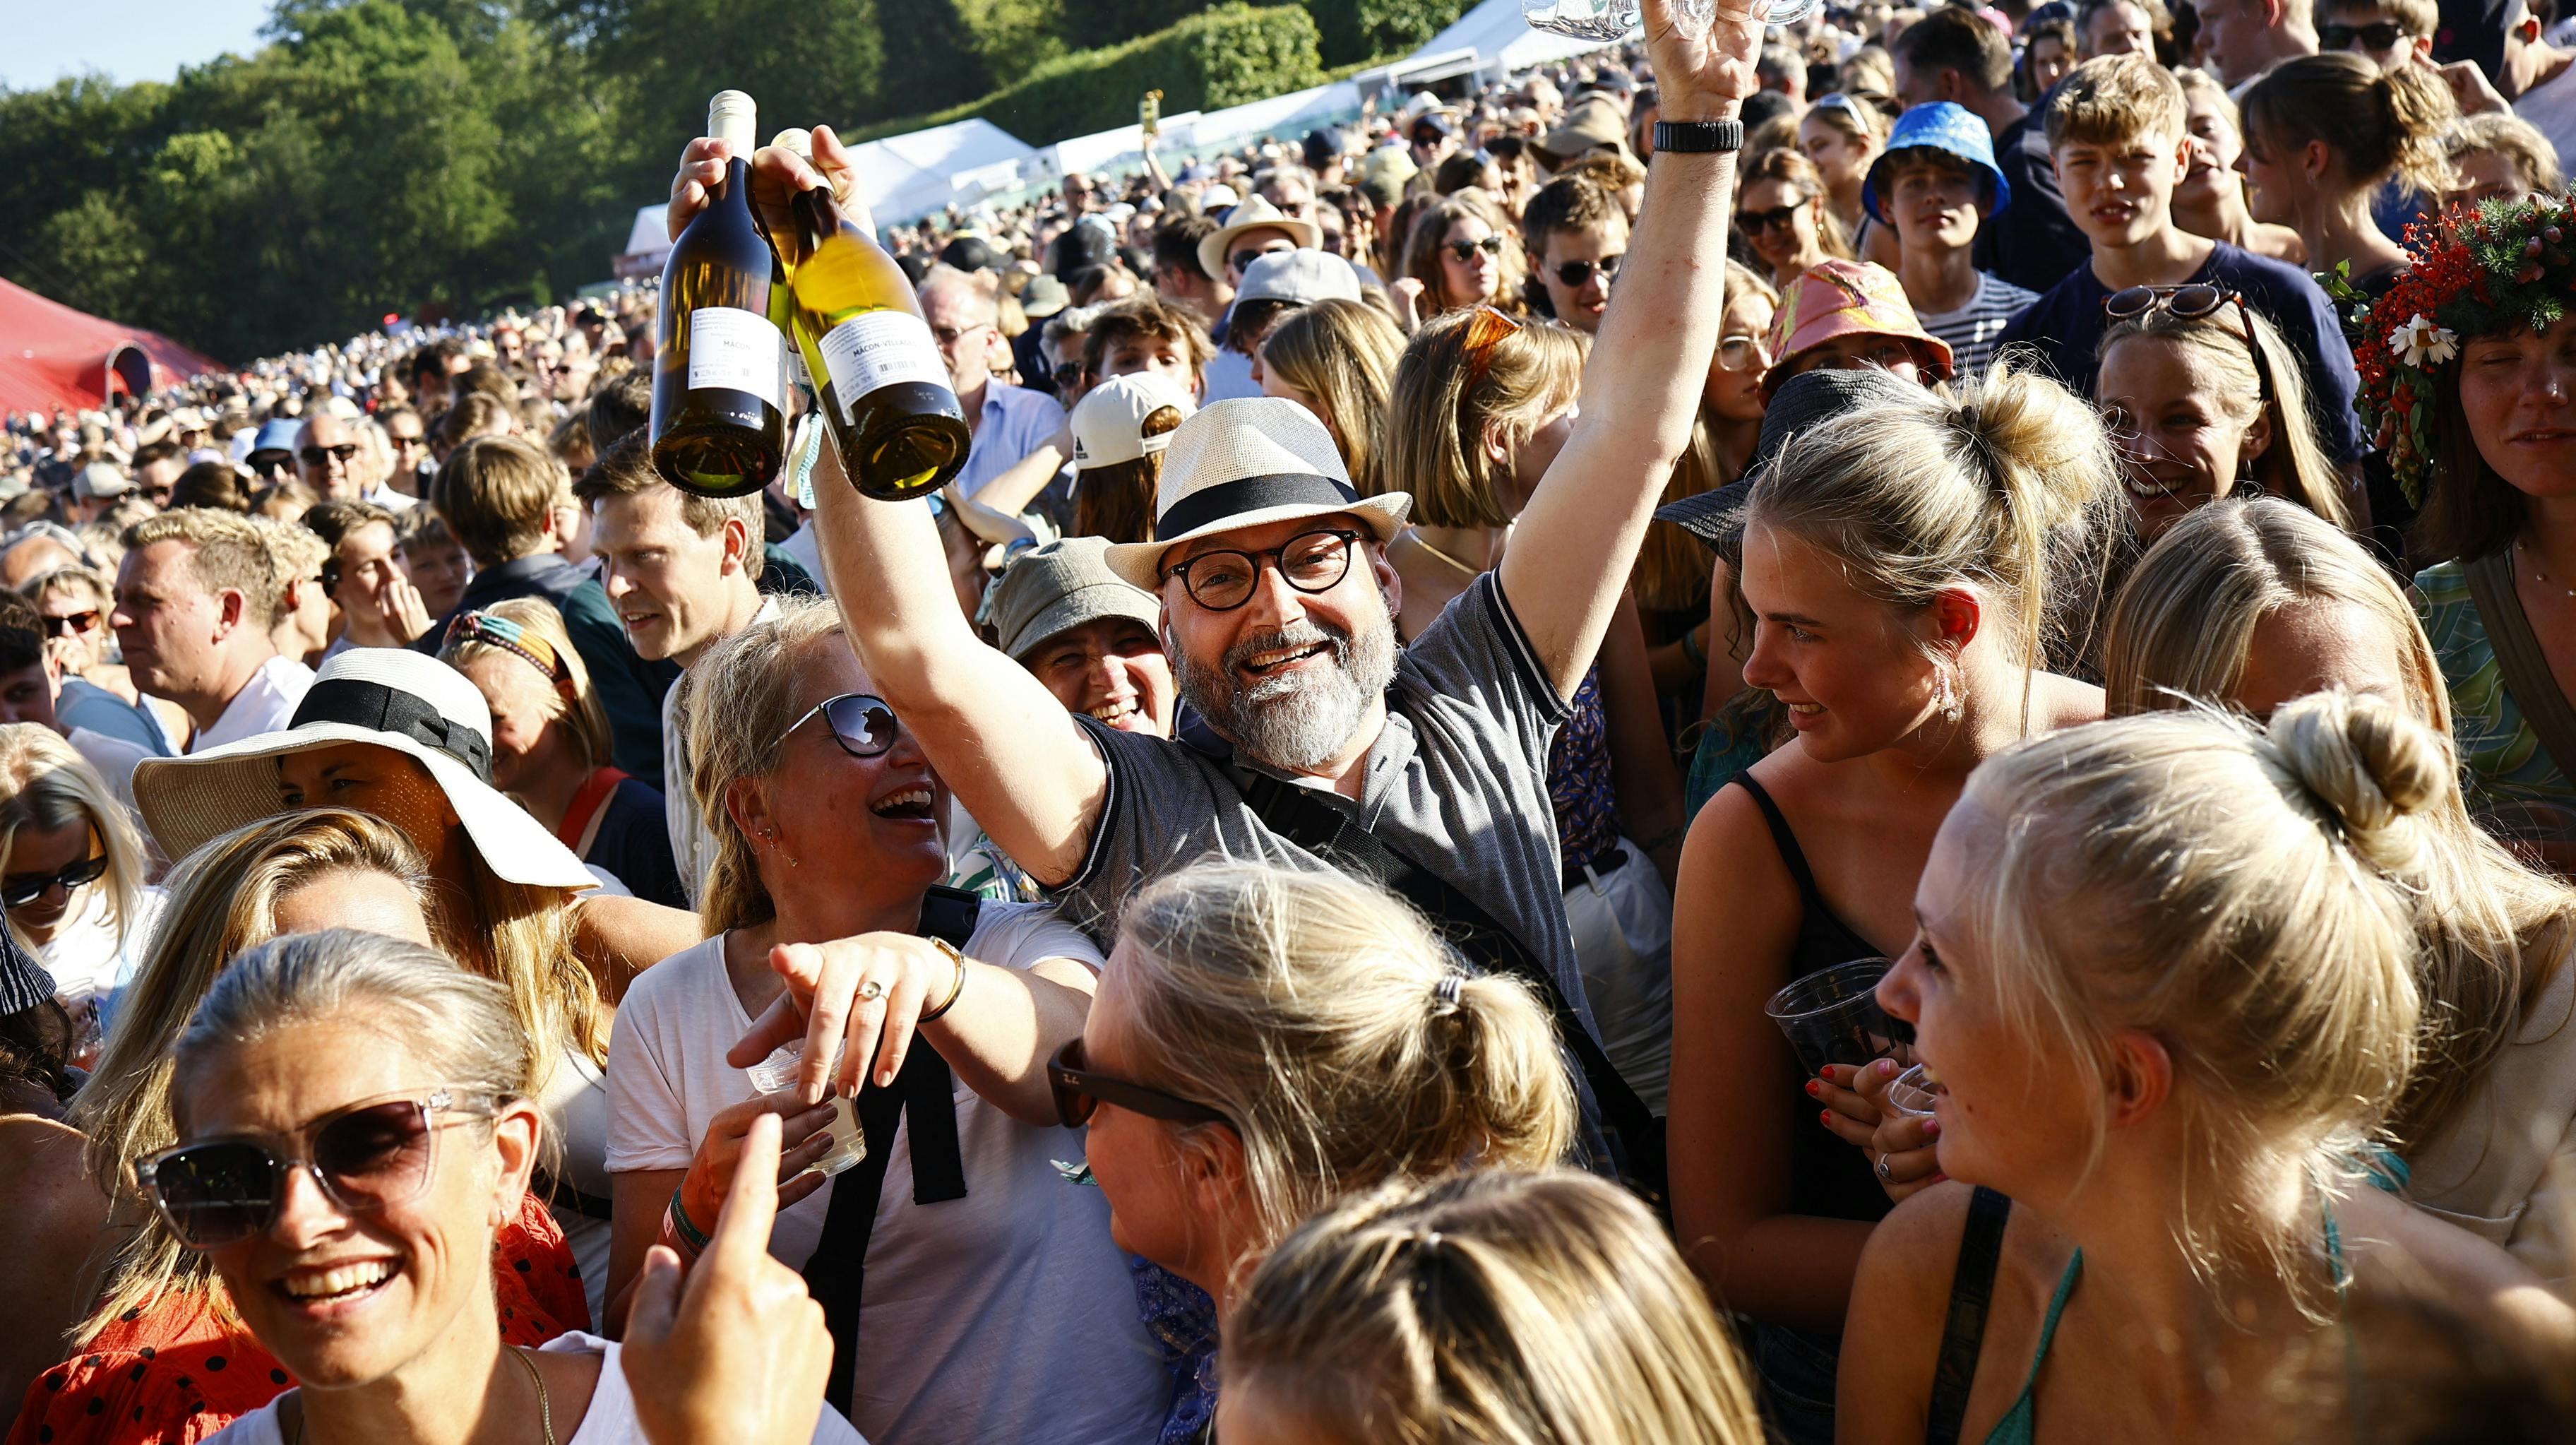 Der bliver drukket alkohol i rigelige mængder på årets Heartland Festival. For nogle lidt mere end rigeligt ... Billedet har intet med den anholdte mand at gøre.&nbsp;